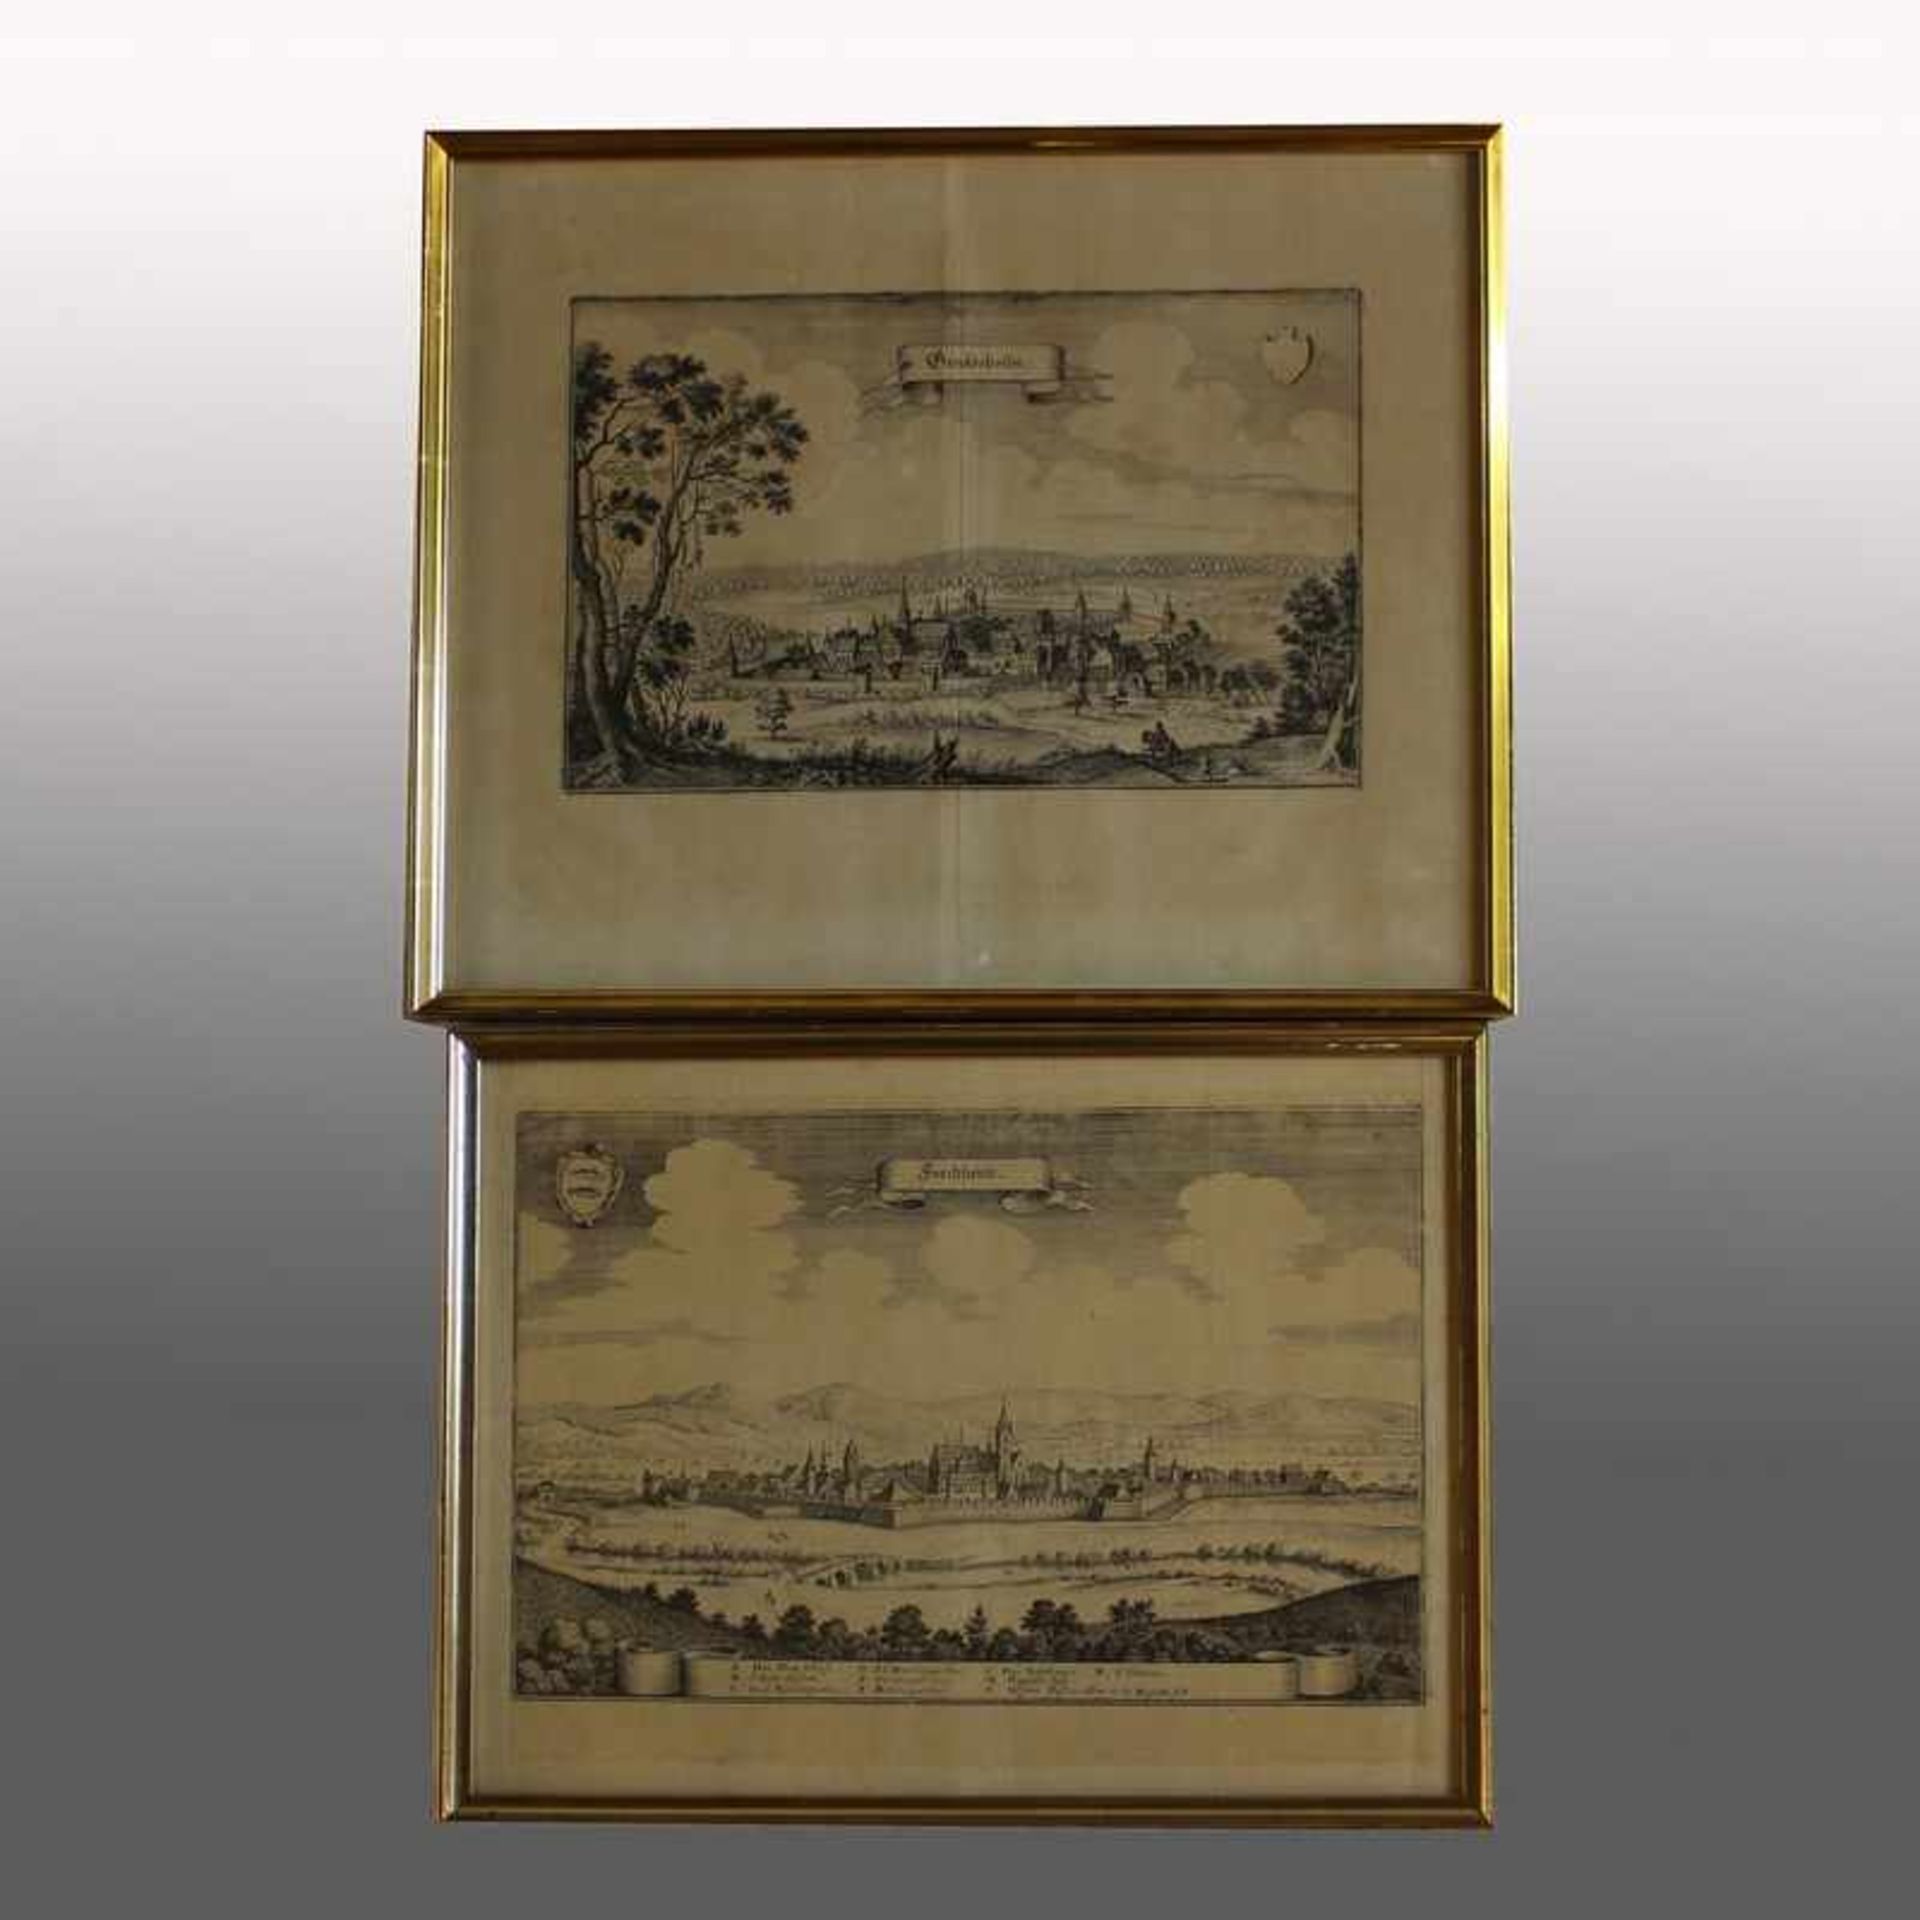 Ansichten - Merian, Matthäus1593 Basel - 1650 Schwalbach, 2 Kupferstiche, Stadtansichten bez. "